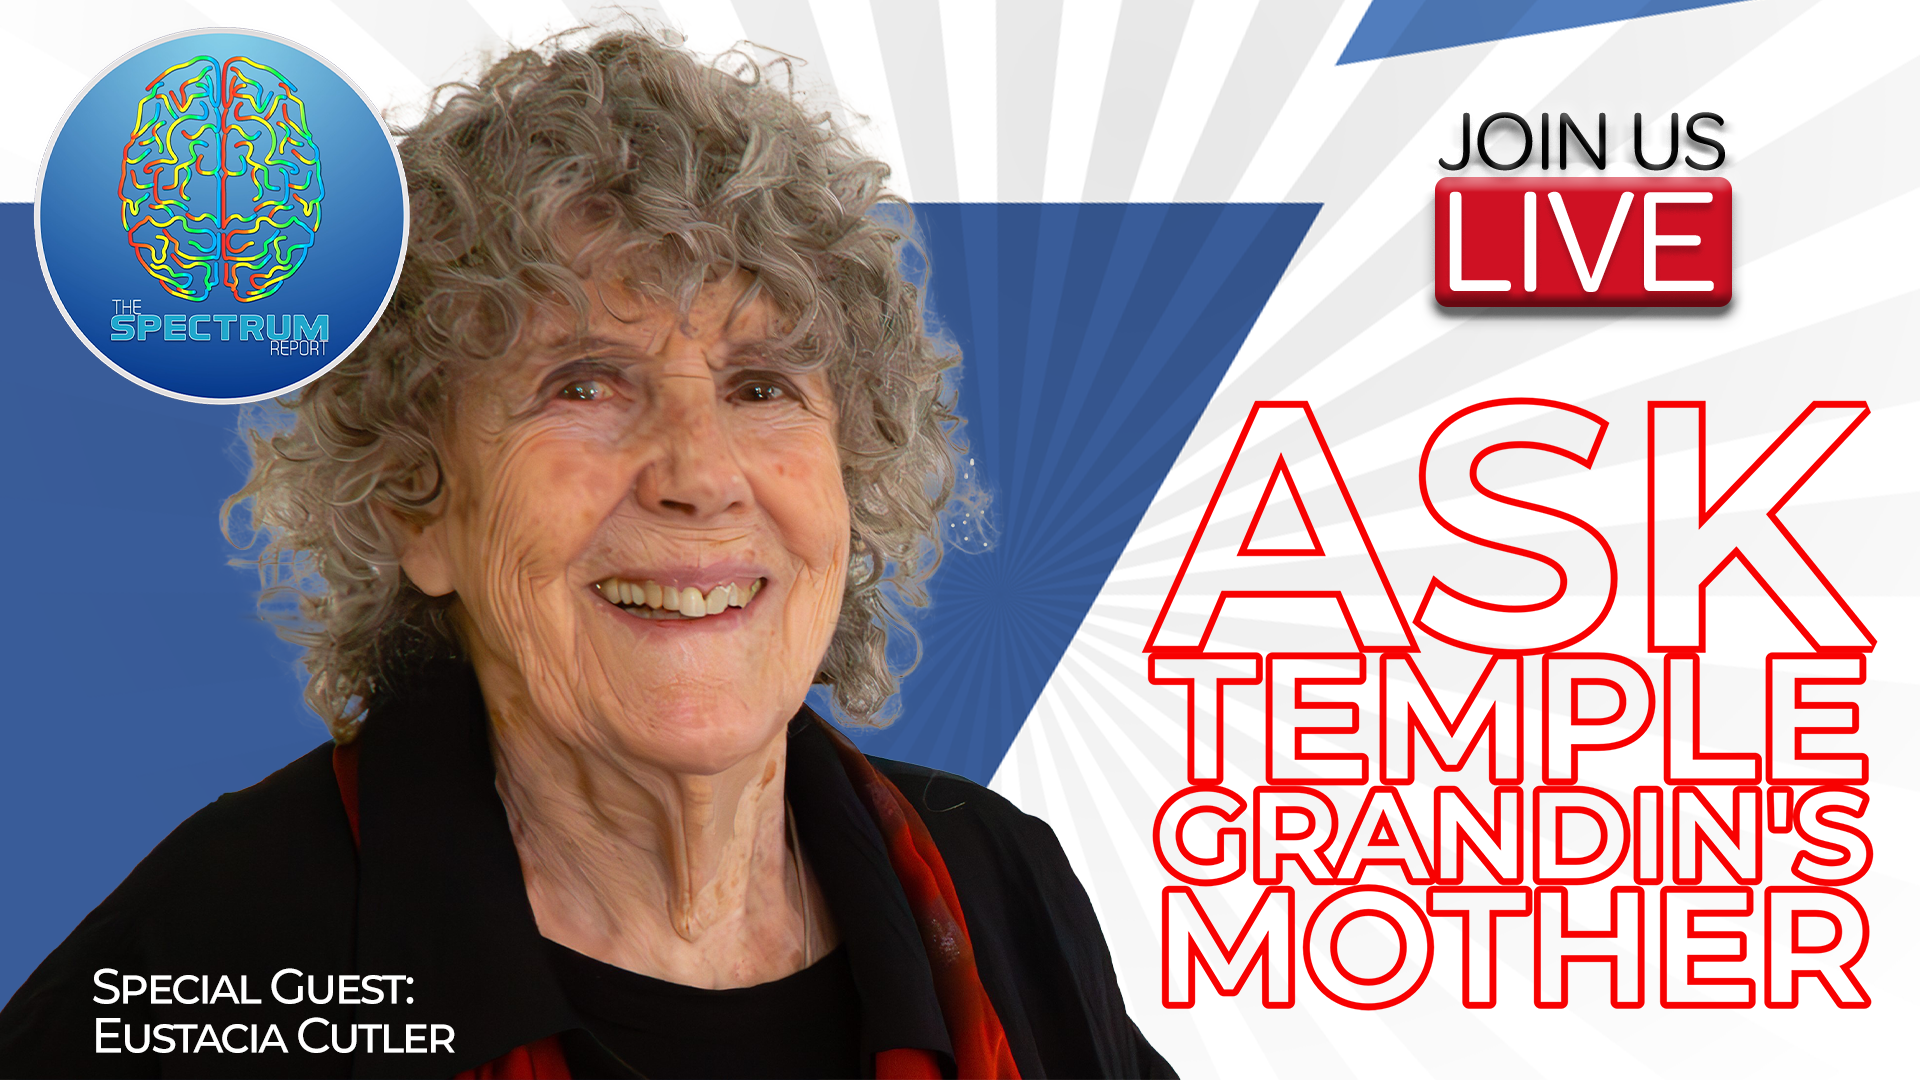 Meet Temple Grandin's Mother!